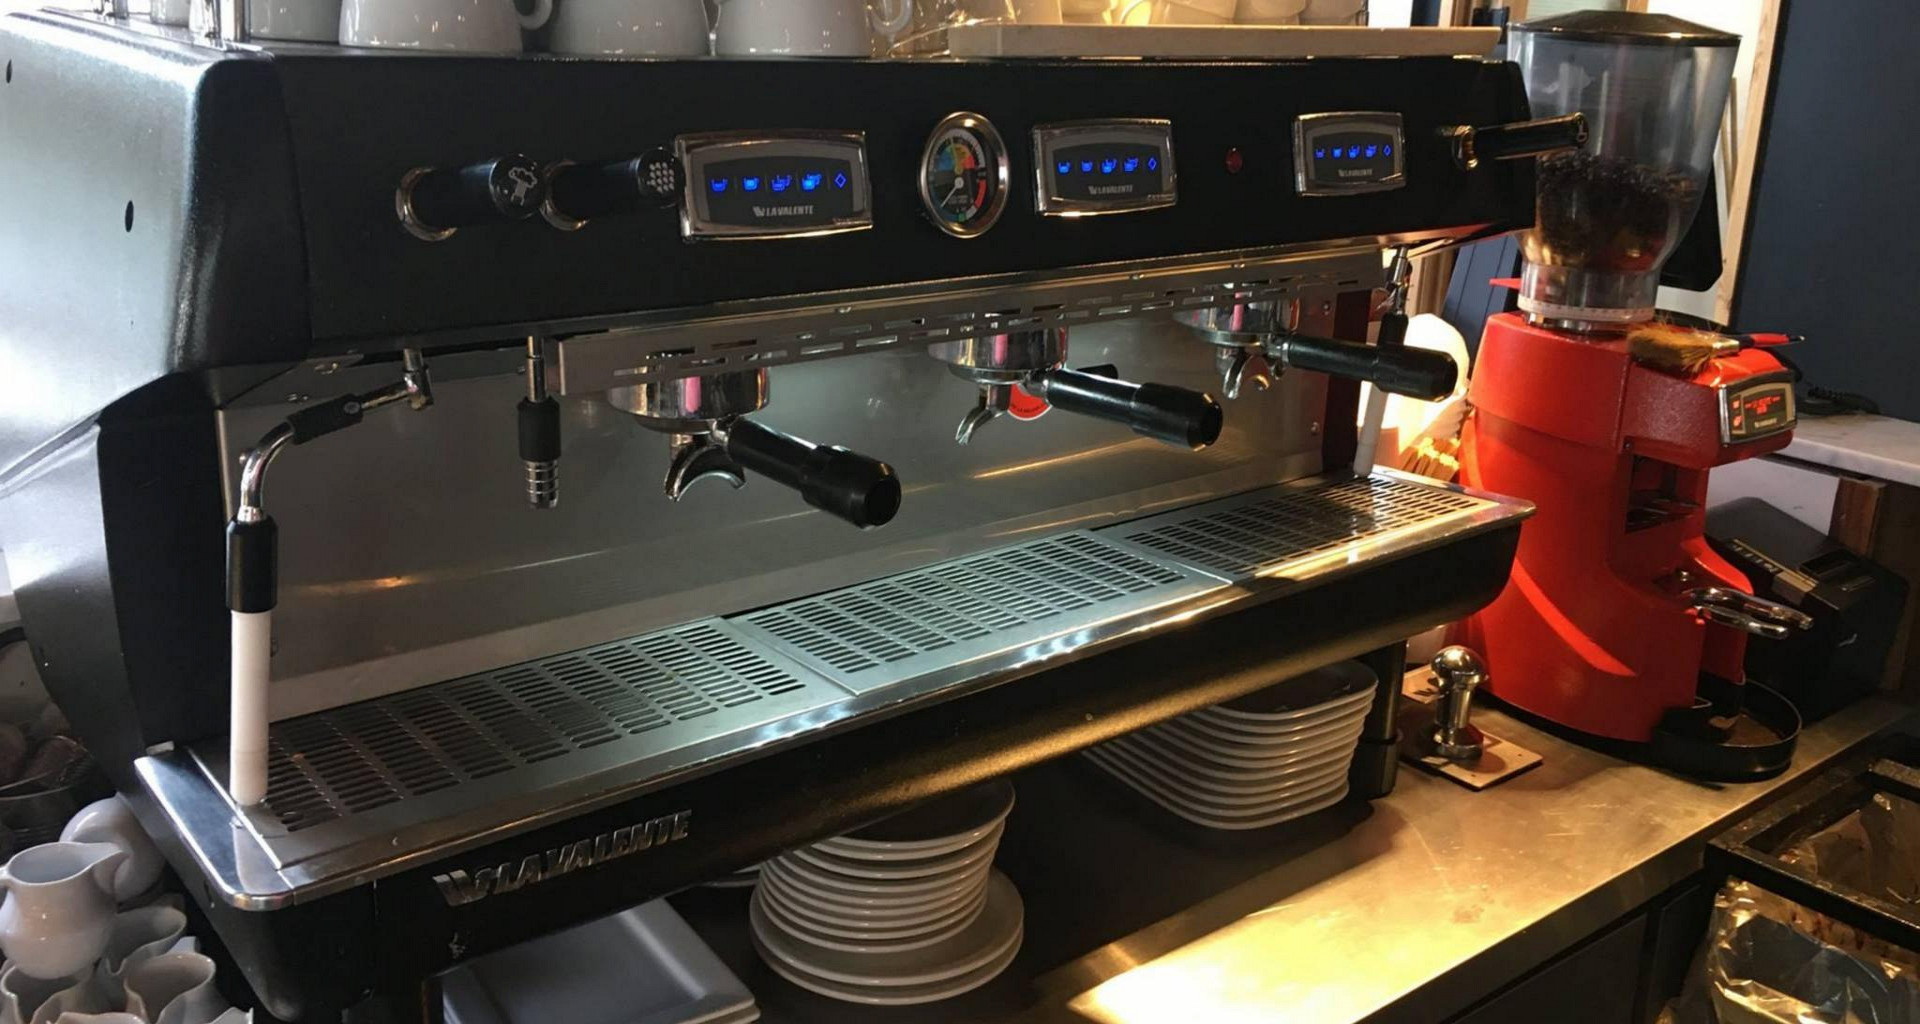  RXFSP Máquina expendedora de café, cafetera comercial